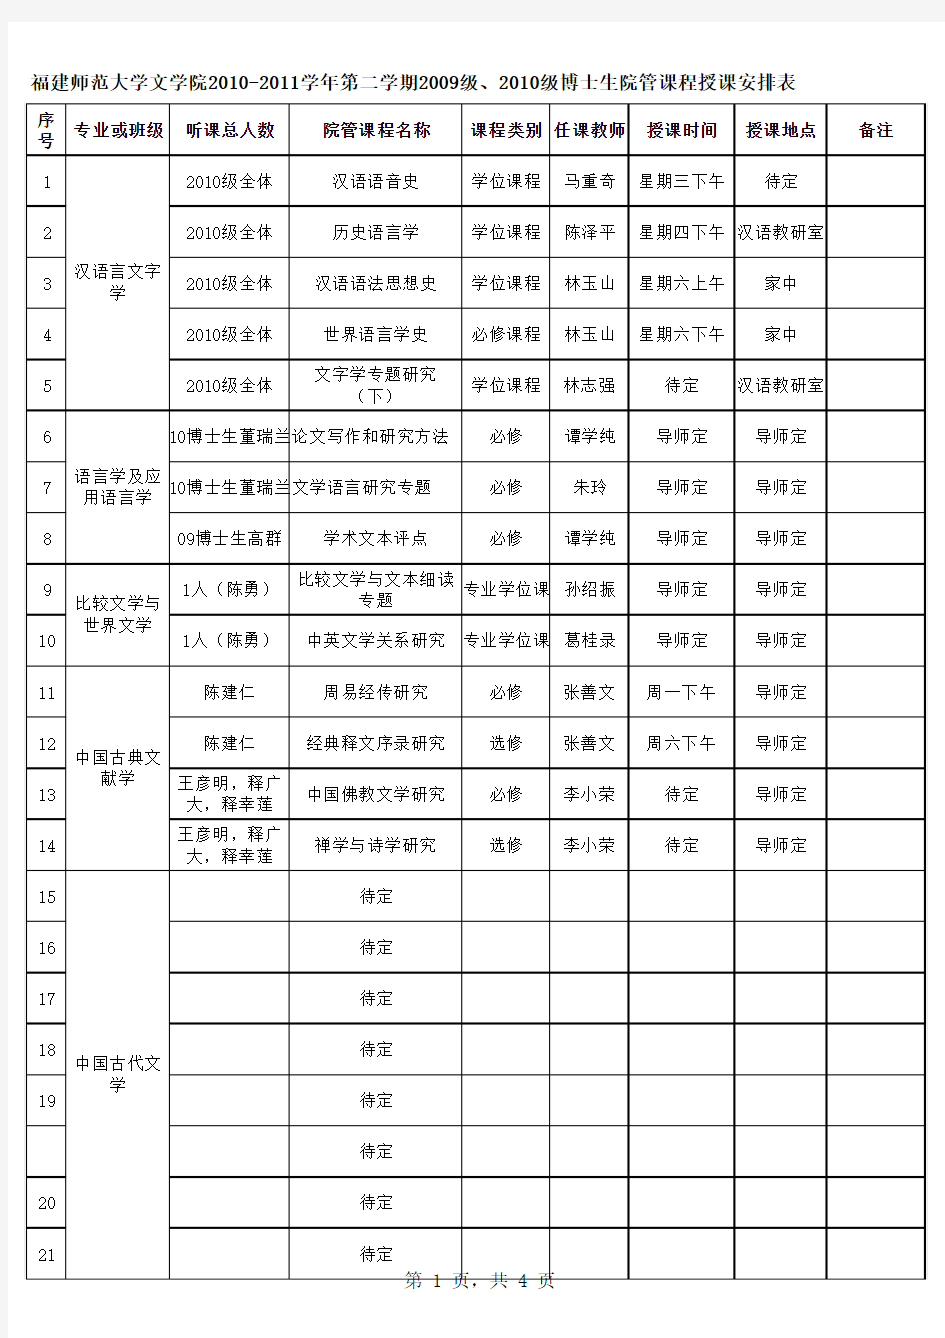 福师大文学院2010-2011学年第二学期研究生课程表